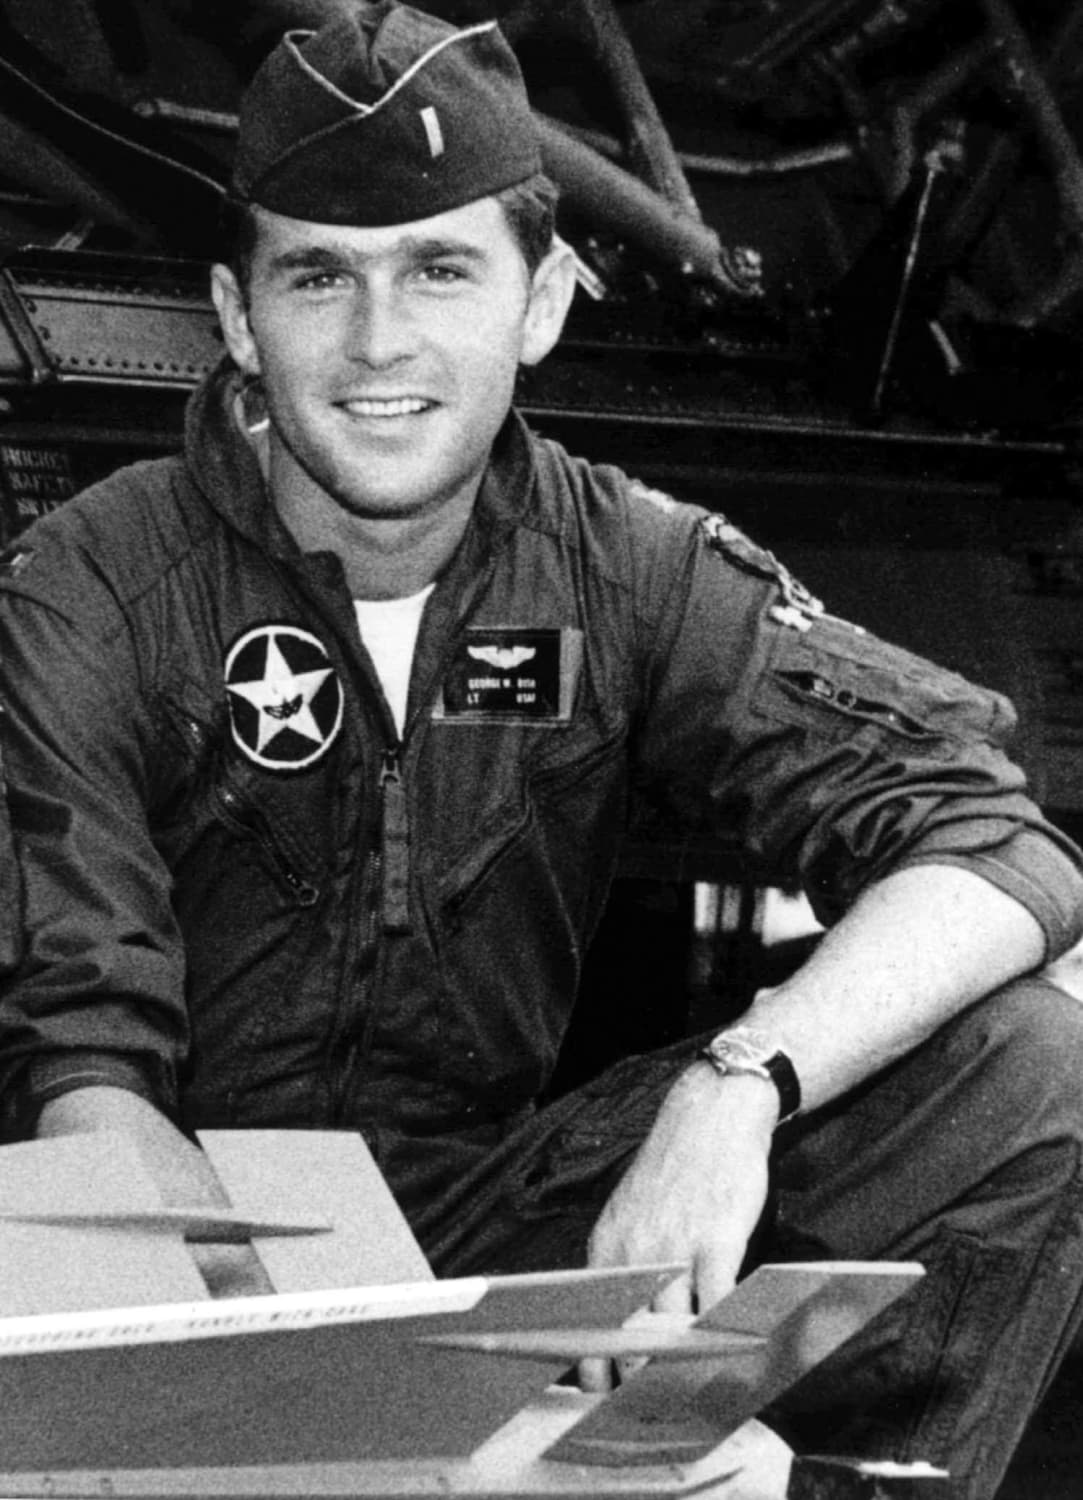 Lt. George W. Bush in the Texas Air National Guard, 1968